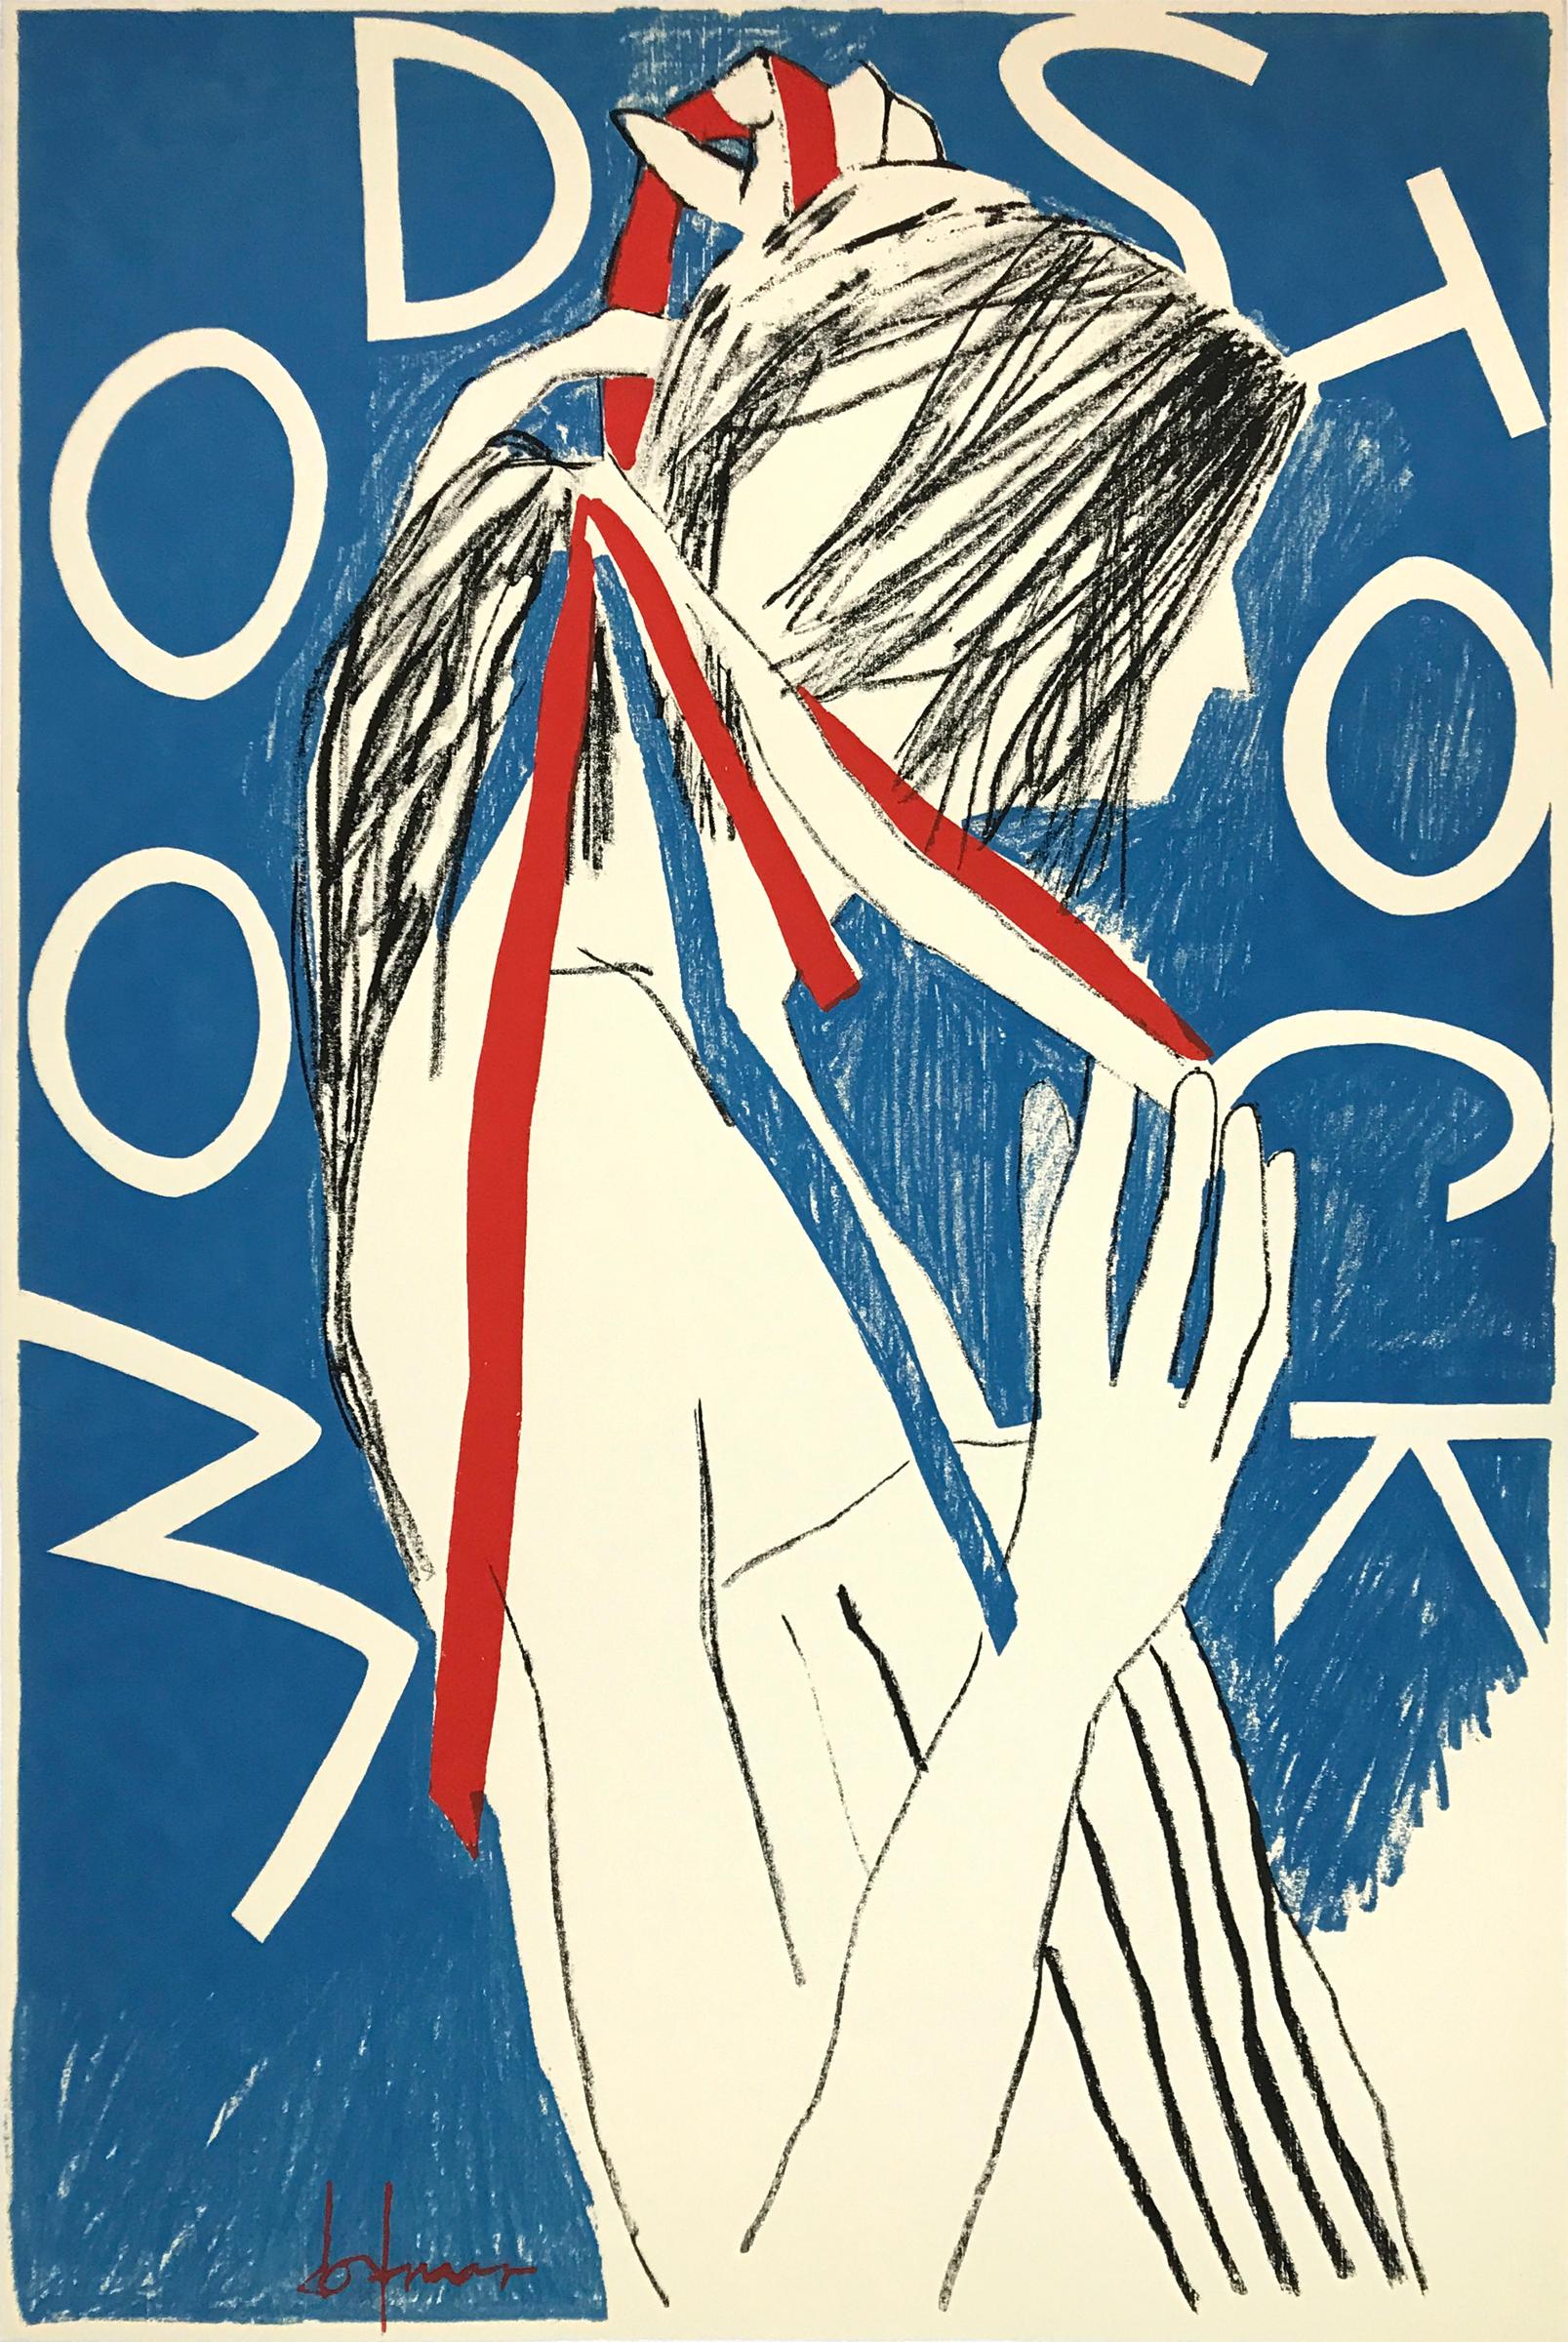 The Woodstock-Poster von Bruce Dorfman, 1968